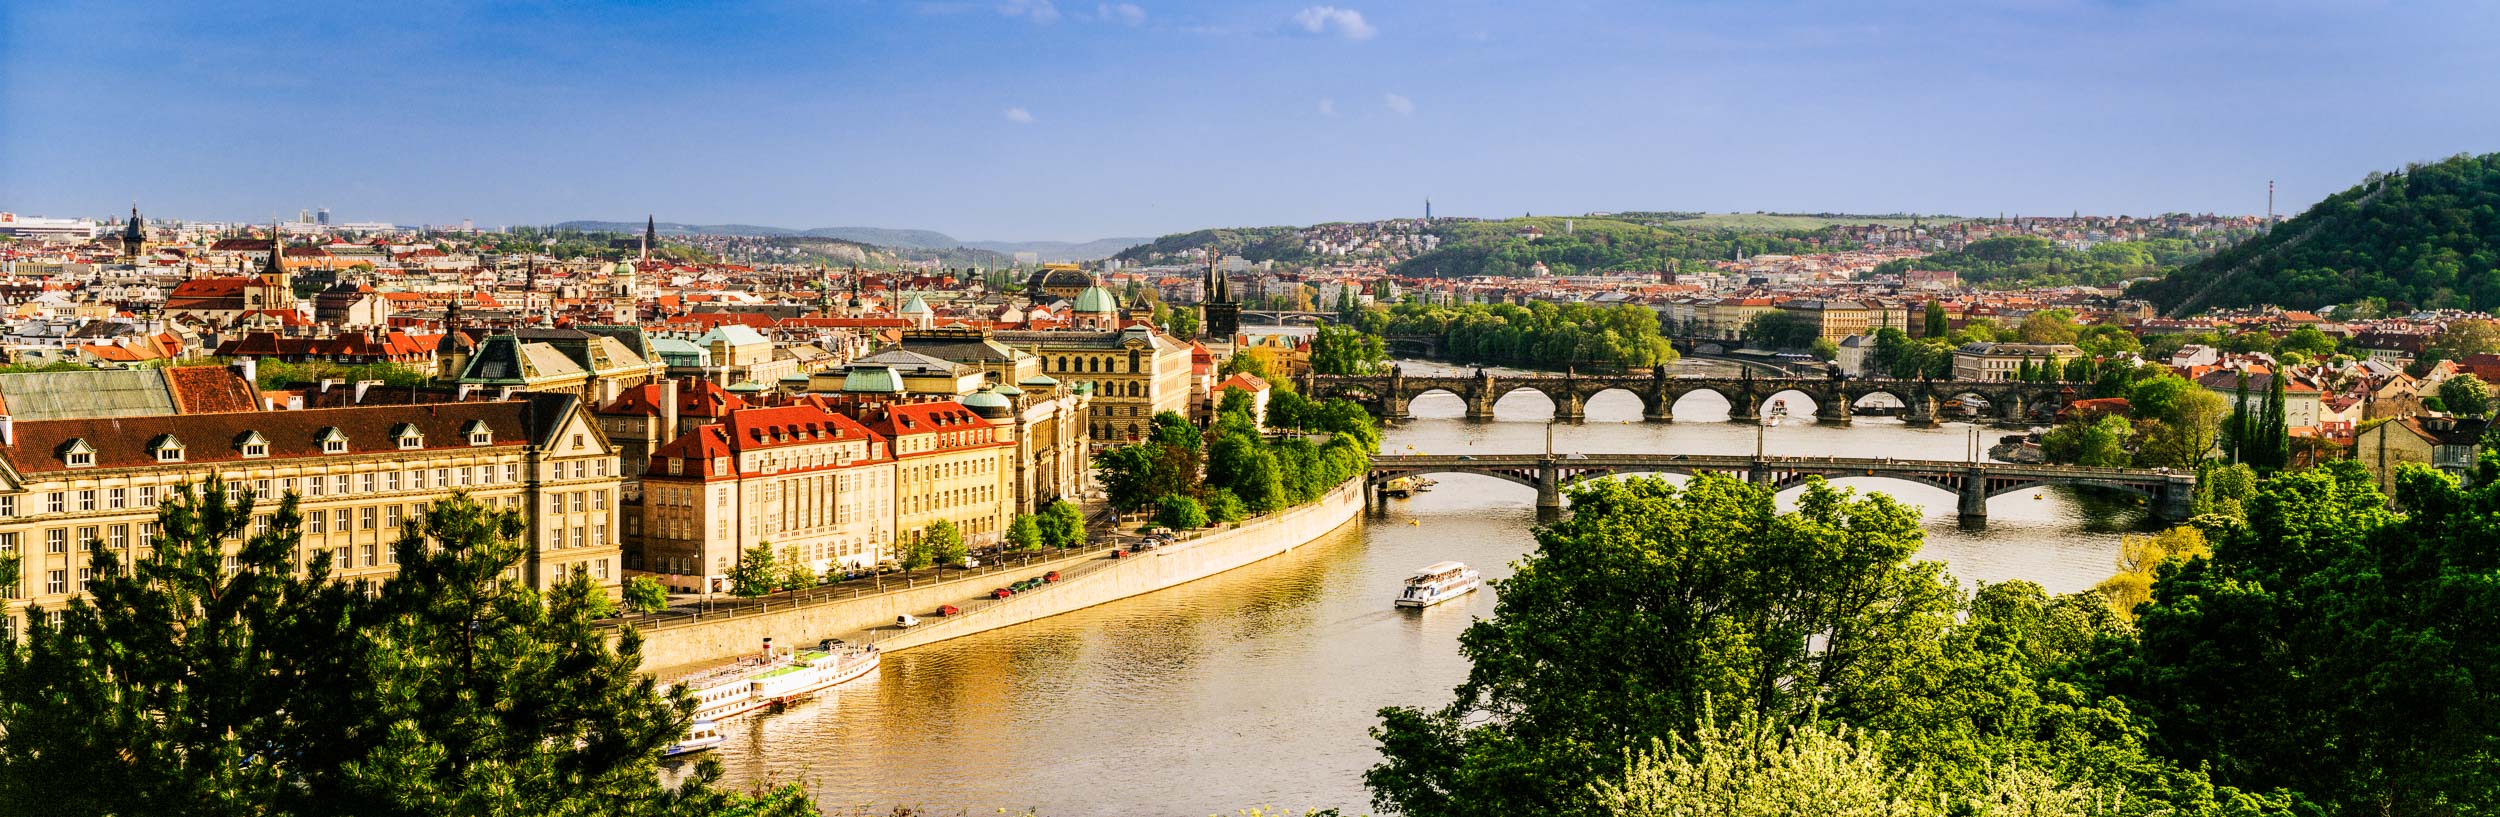  Vltava River,  Prague